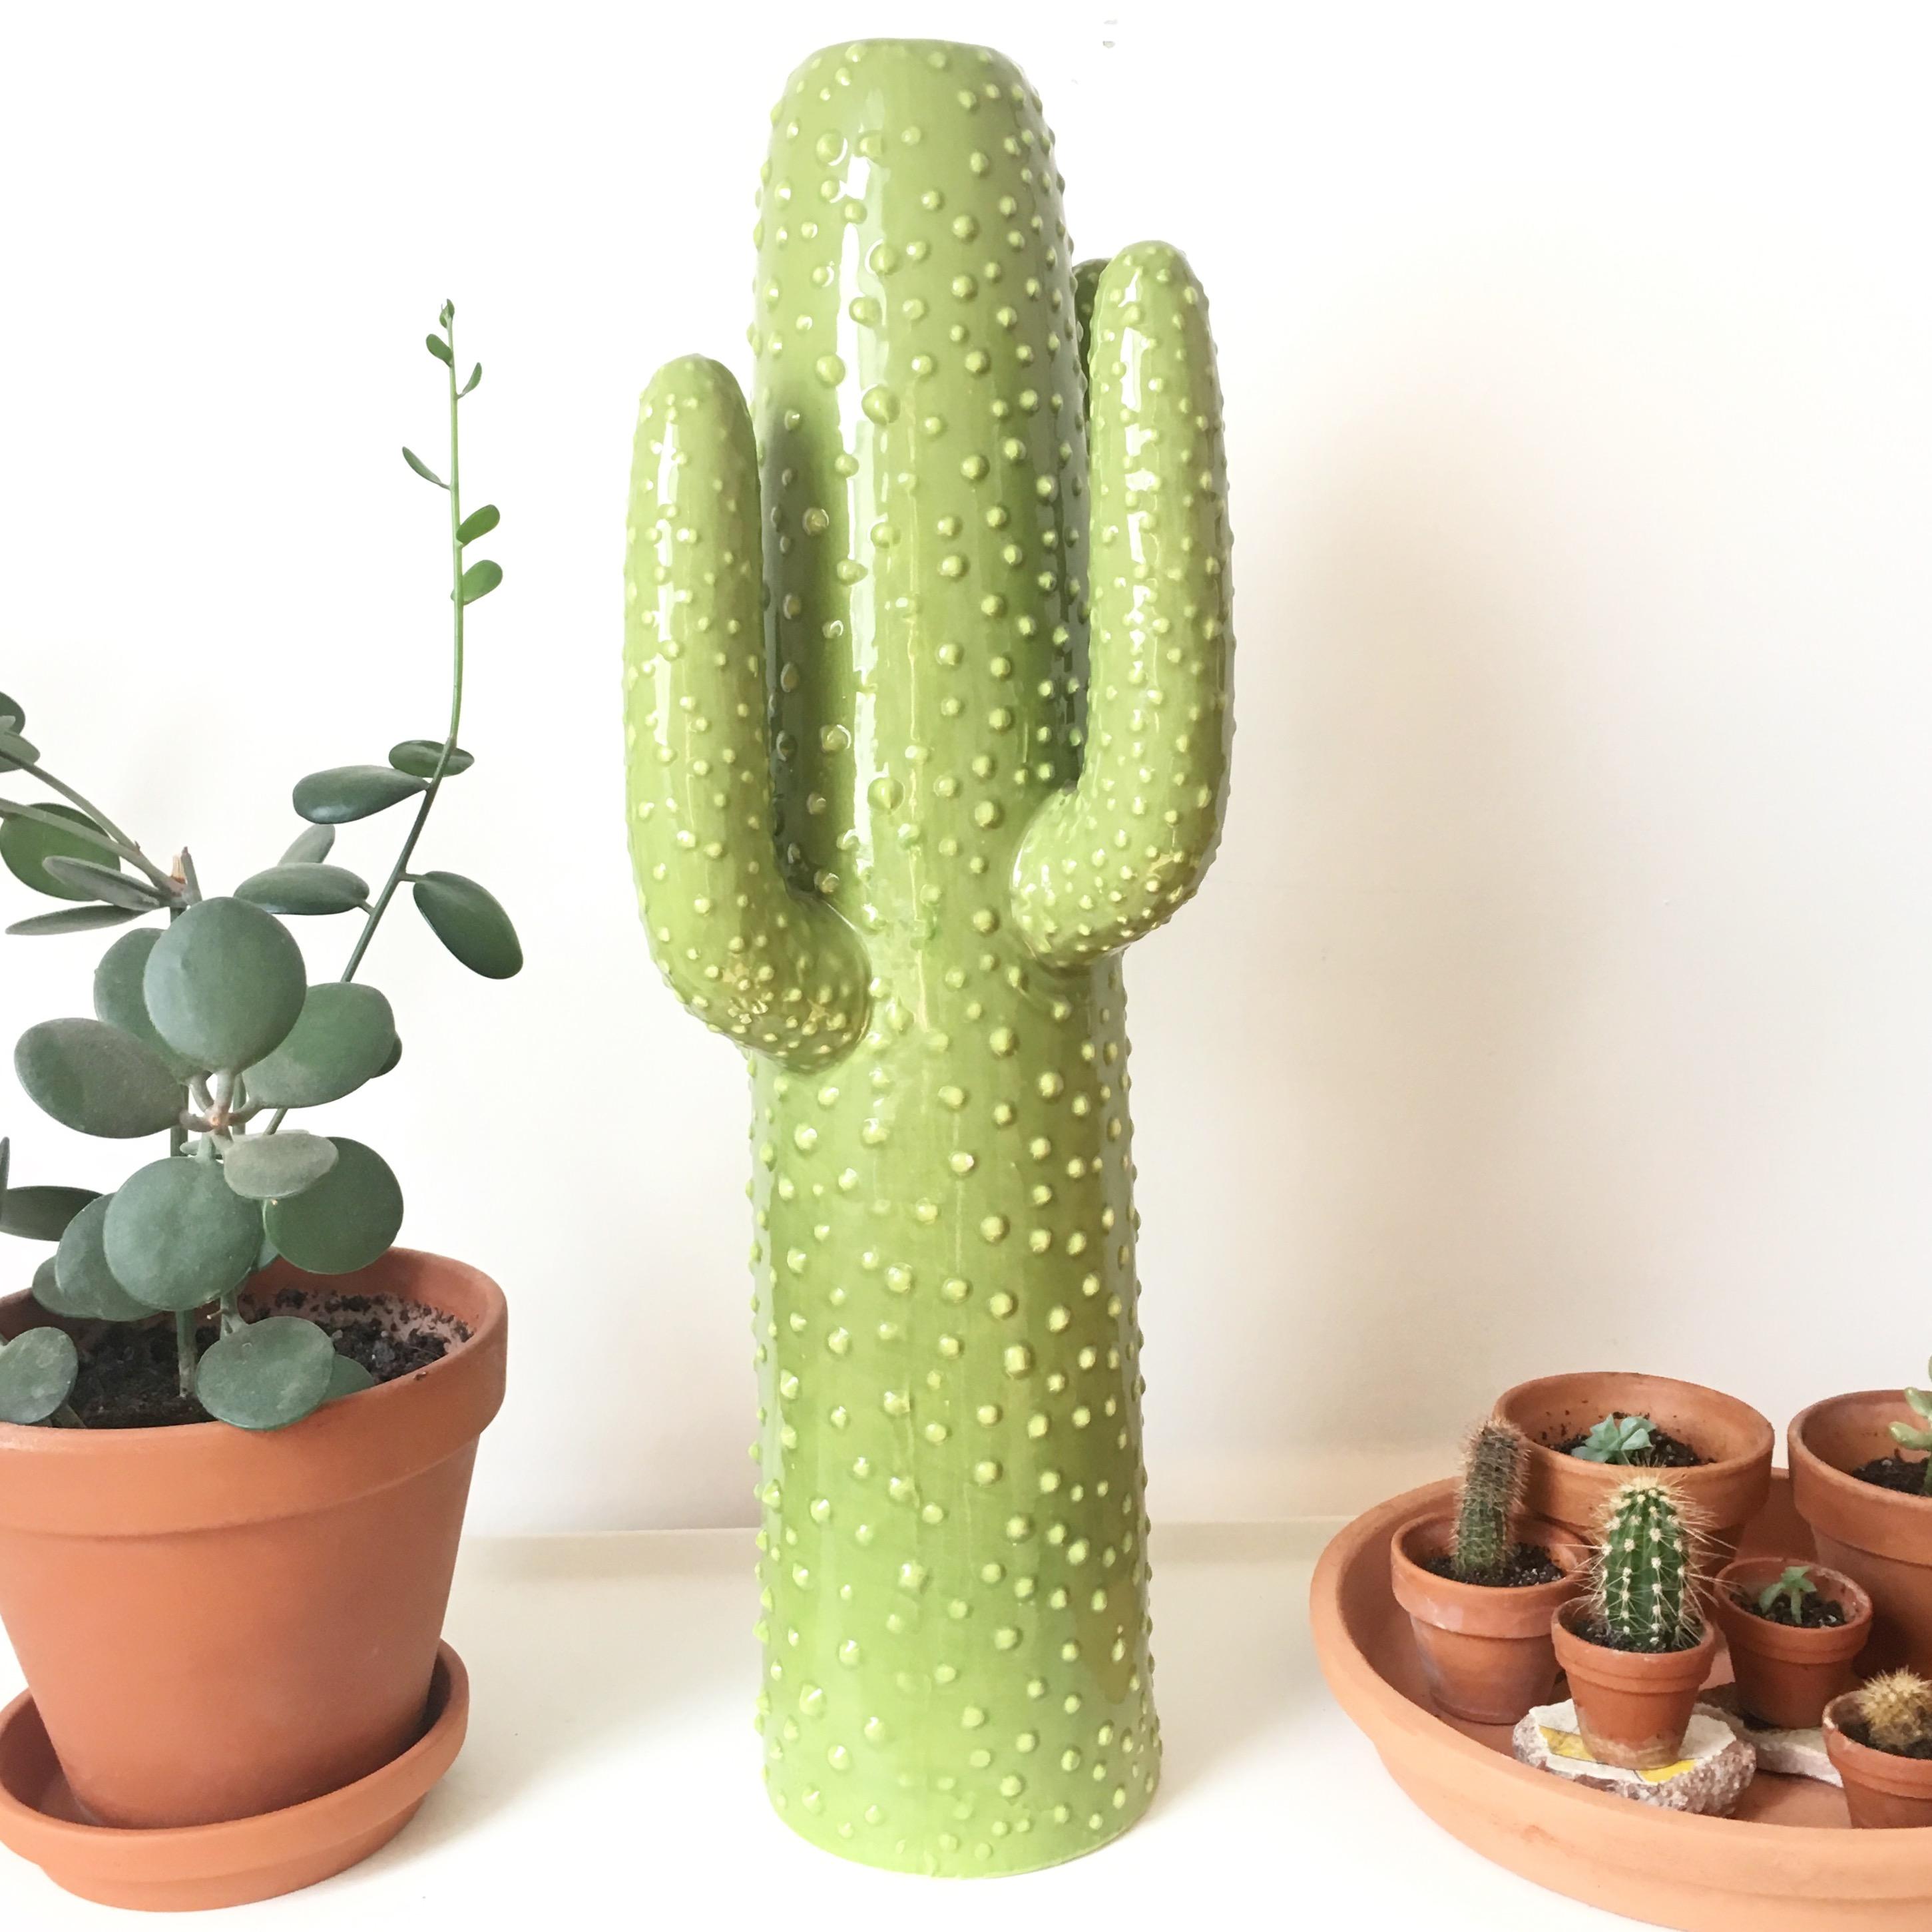 Mein immergrüner Kaktus #urbanjungle #kaktus #vase #